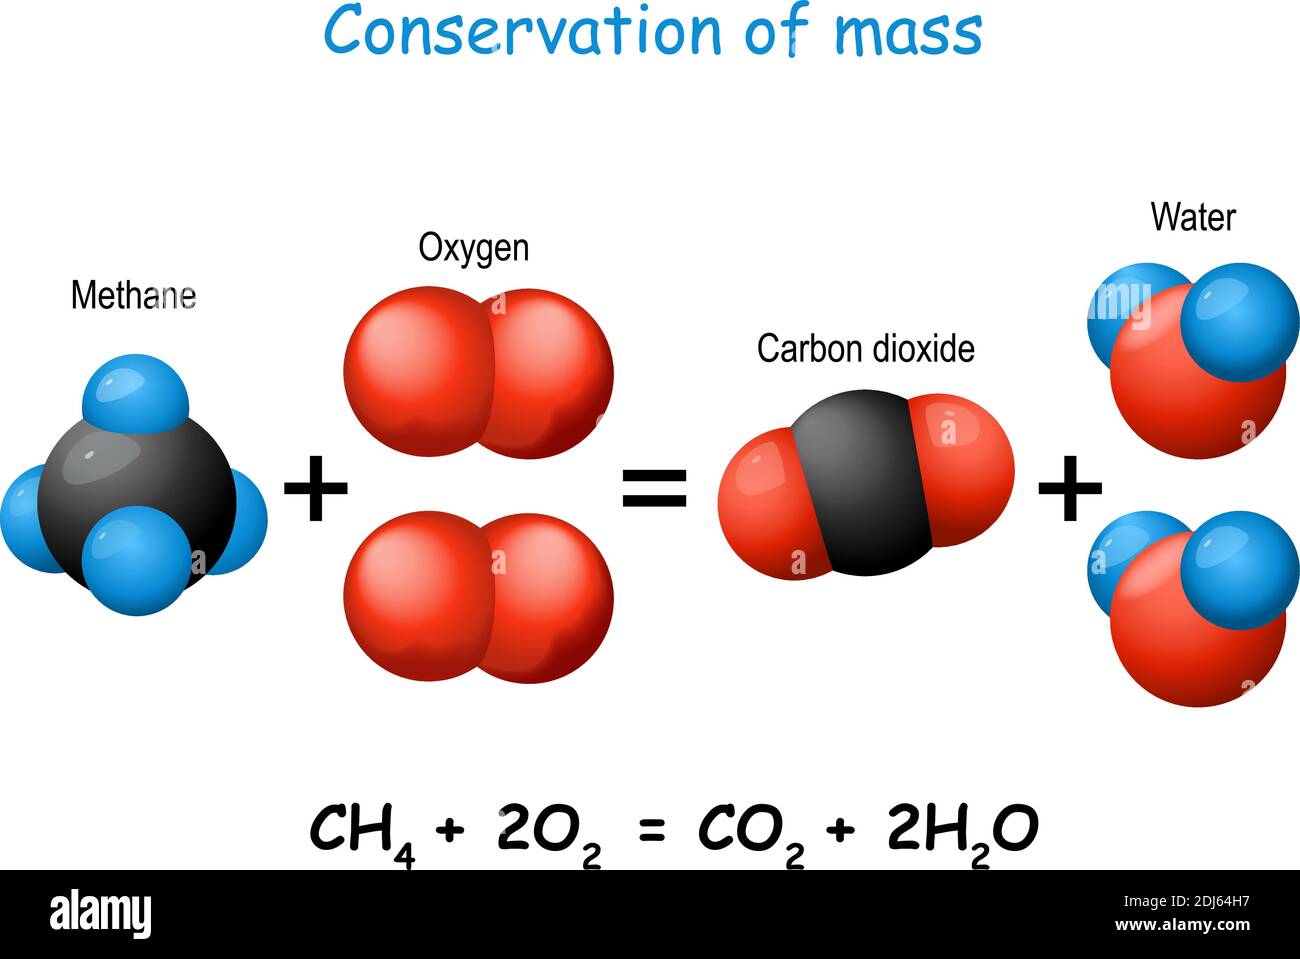 Loi de conservation de la masse. Expérience scientifique avec des molécules de méthane, de dioxyde de carbone, d'oxygène et d'eau. Changement chimique. Diagramme vectoriel Illustration de Vecteur